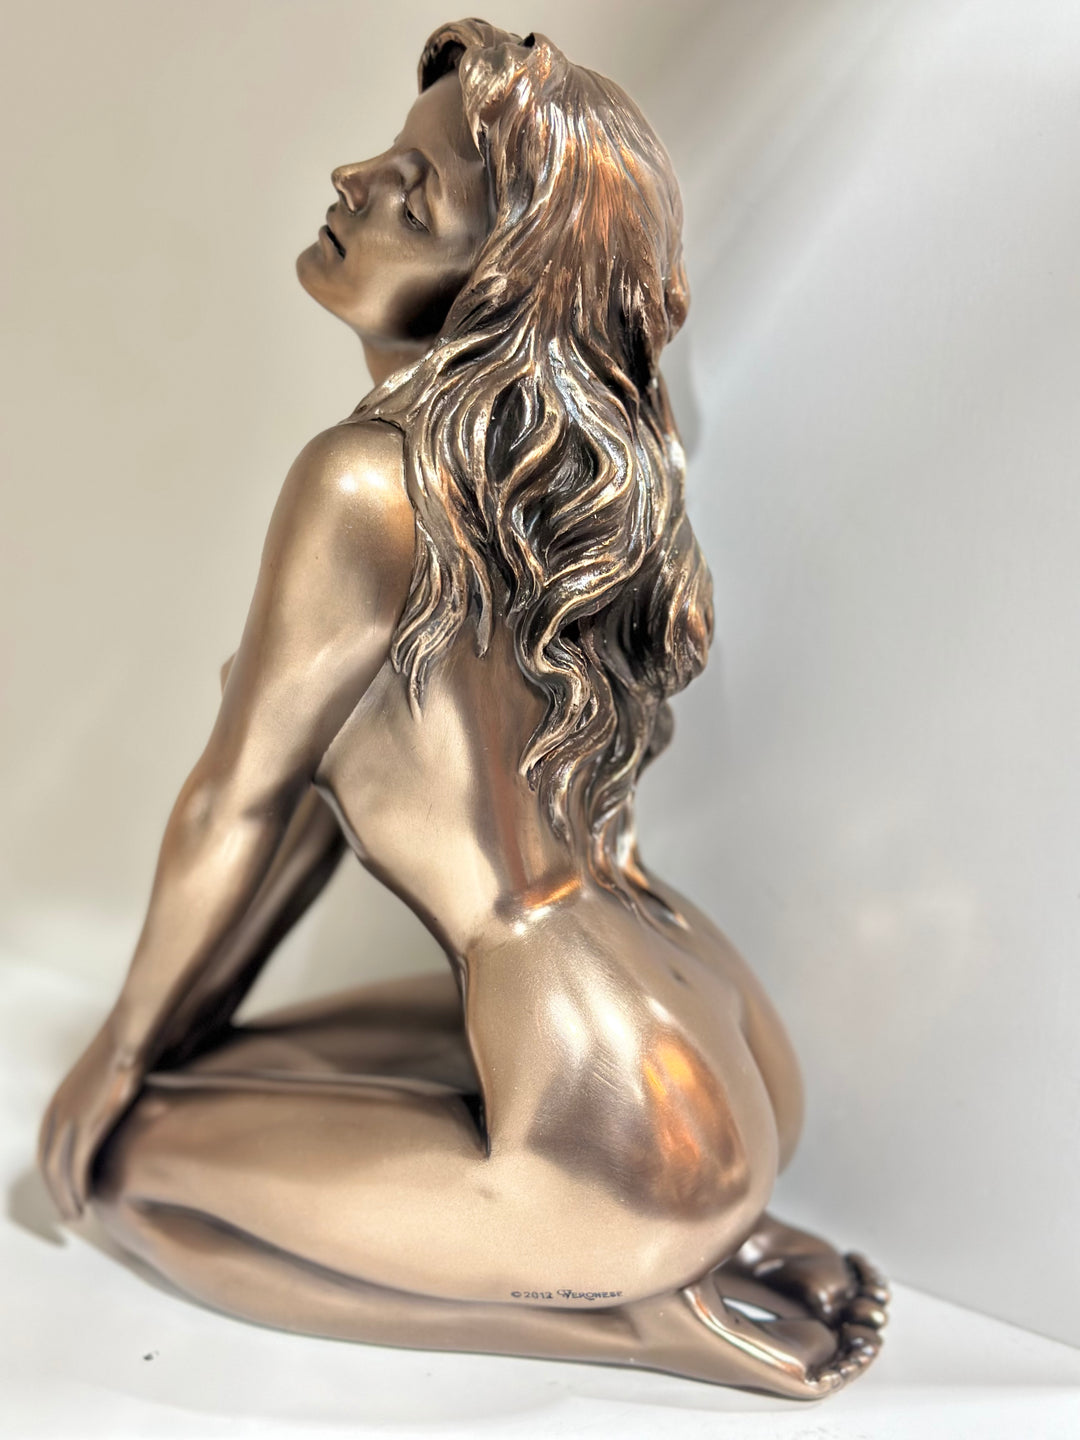 Bronze Plated Sculpture, Nude Female Figure